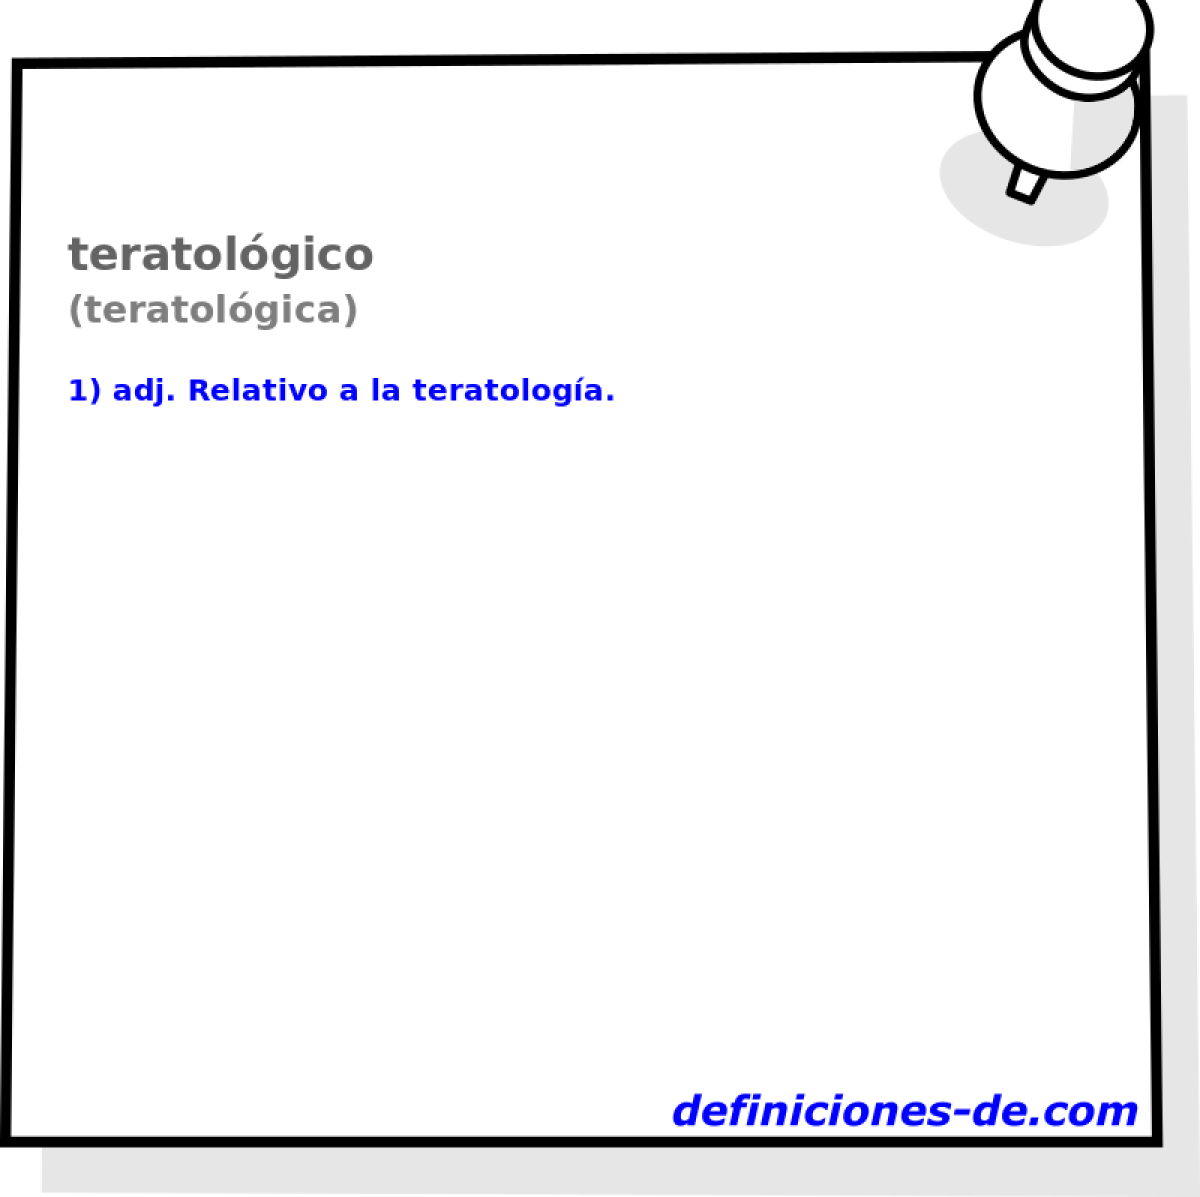 teratolgico (teratolgica)